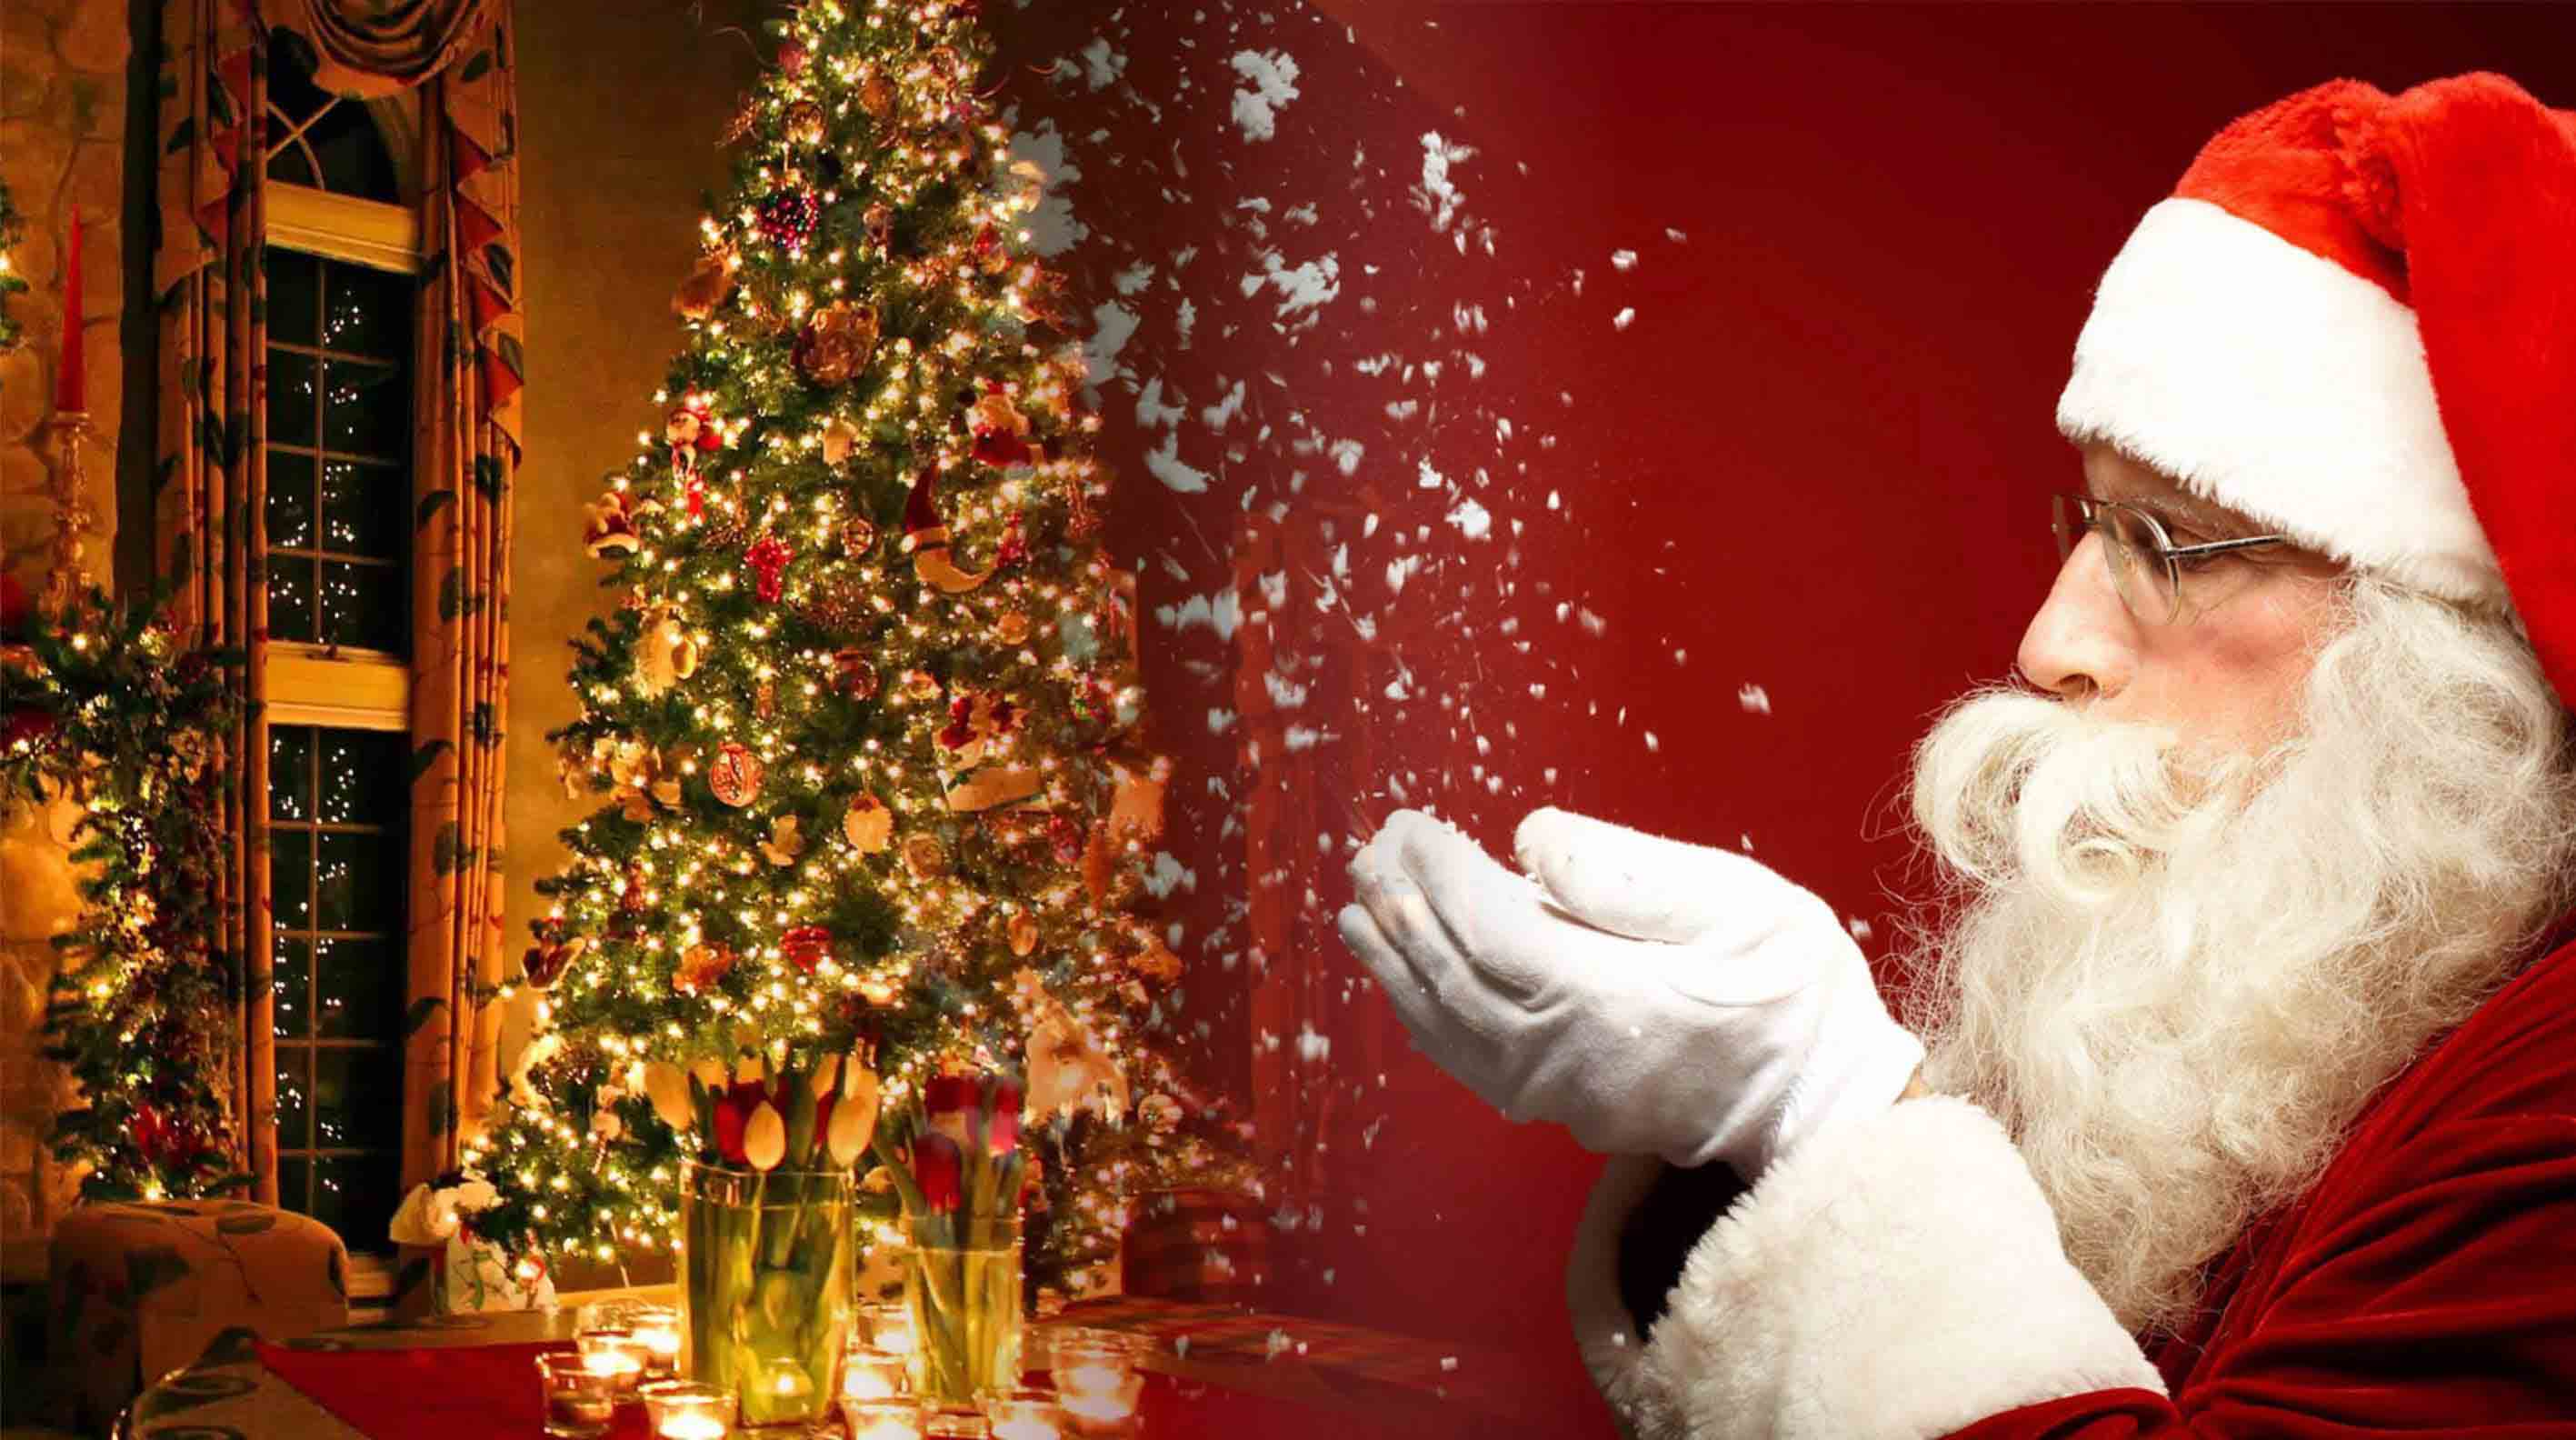 Stt Giáng Sinh bá đạo META.vn: META.vn xin giới thiệu những stt Giáng Sinh bá đạo nhất để bạn có thể tạo dấu ấn trên trang cá nhân. Cùng đón mùa lễ hội đặc biệt này bằng những câu status hài hước và độc đáo.